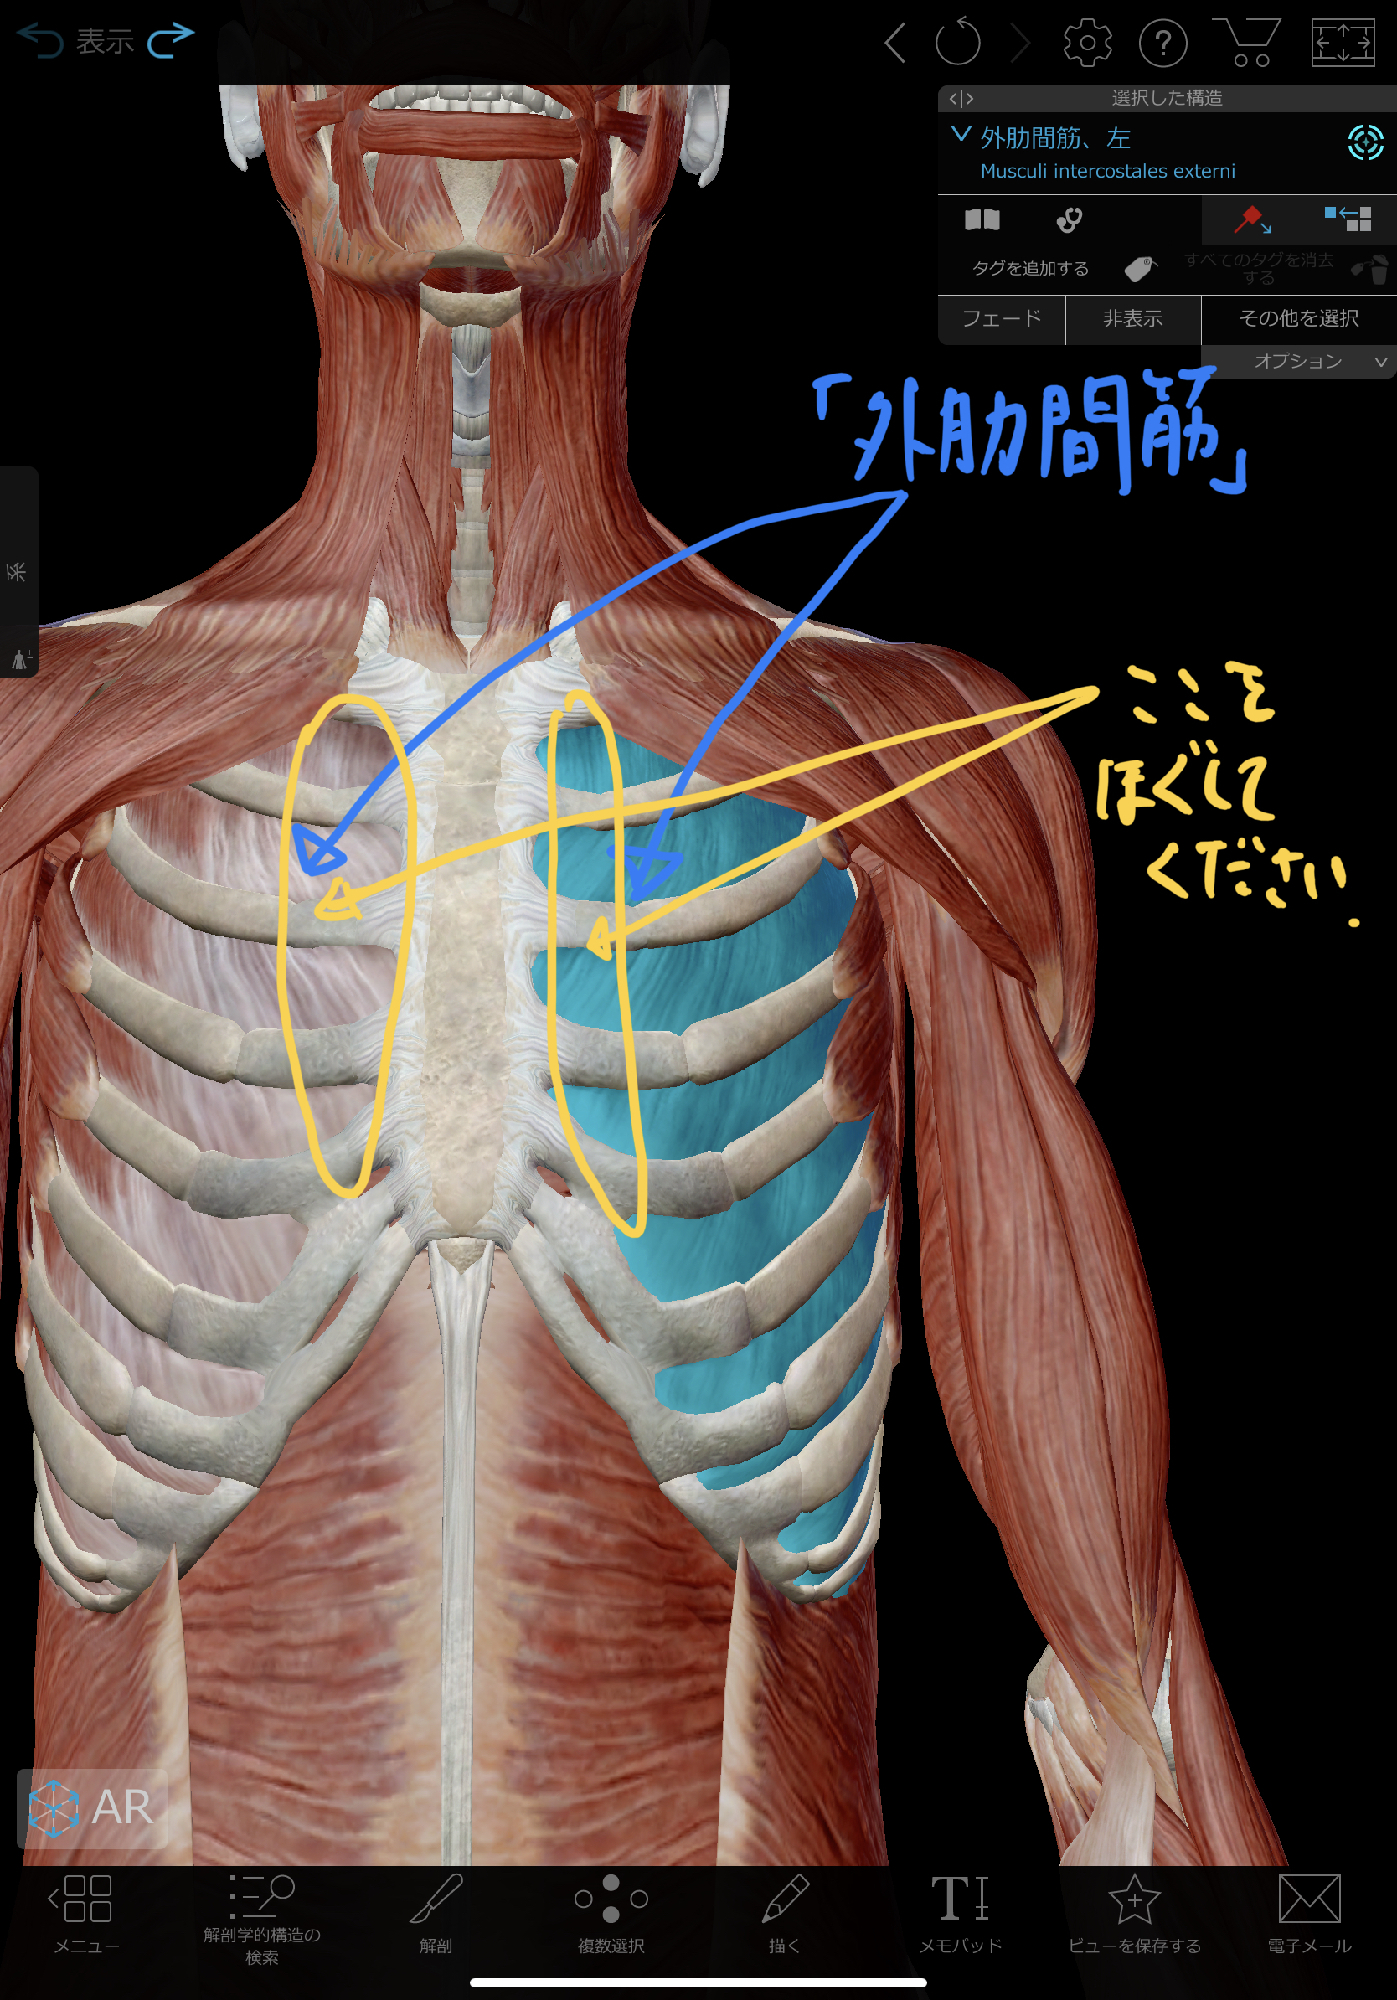 痛い 肋骨 真ん中 右側でも左側でもなく背中の真ん中が痛い原因は筋肉の緊張だけでなく○○の歪みが原因だった